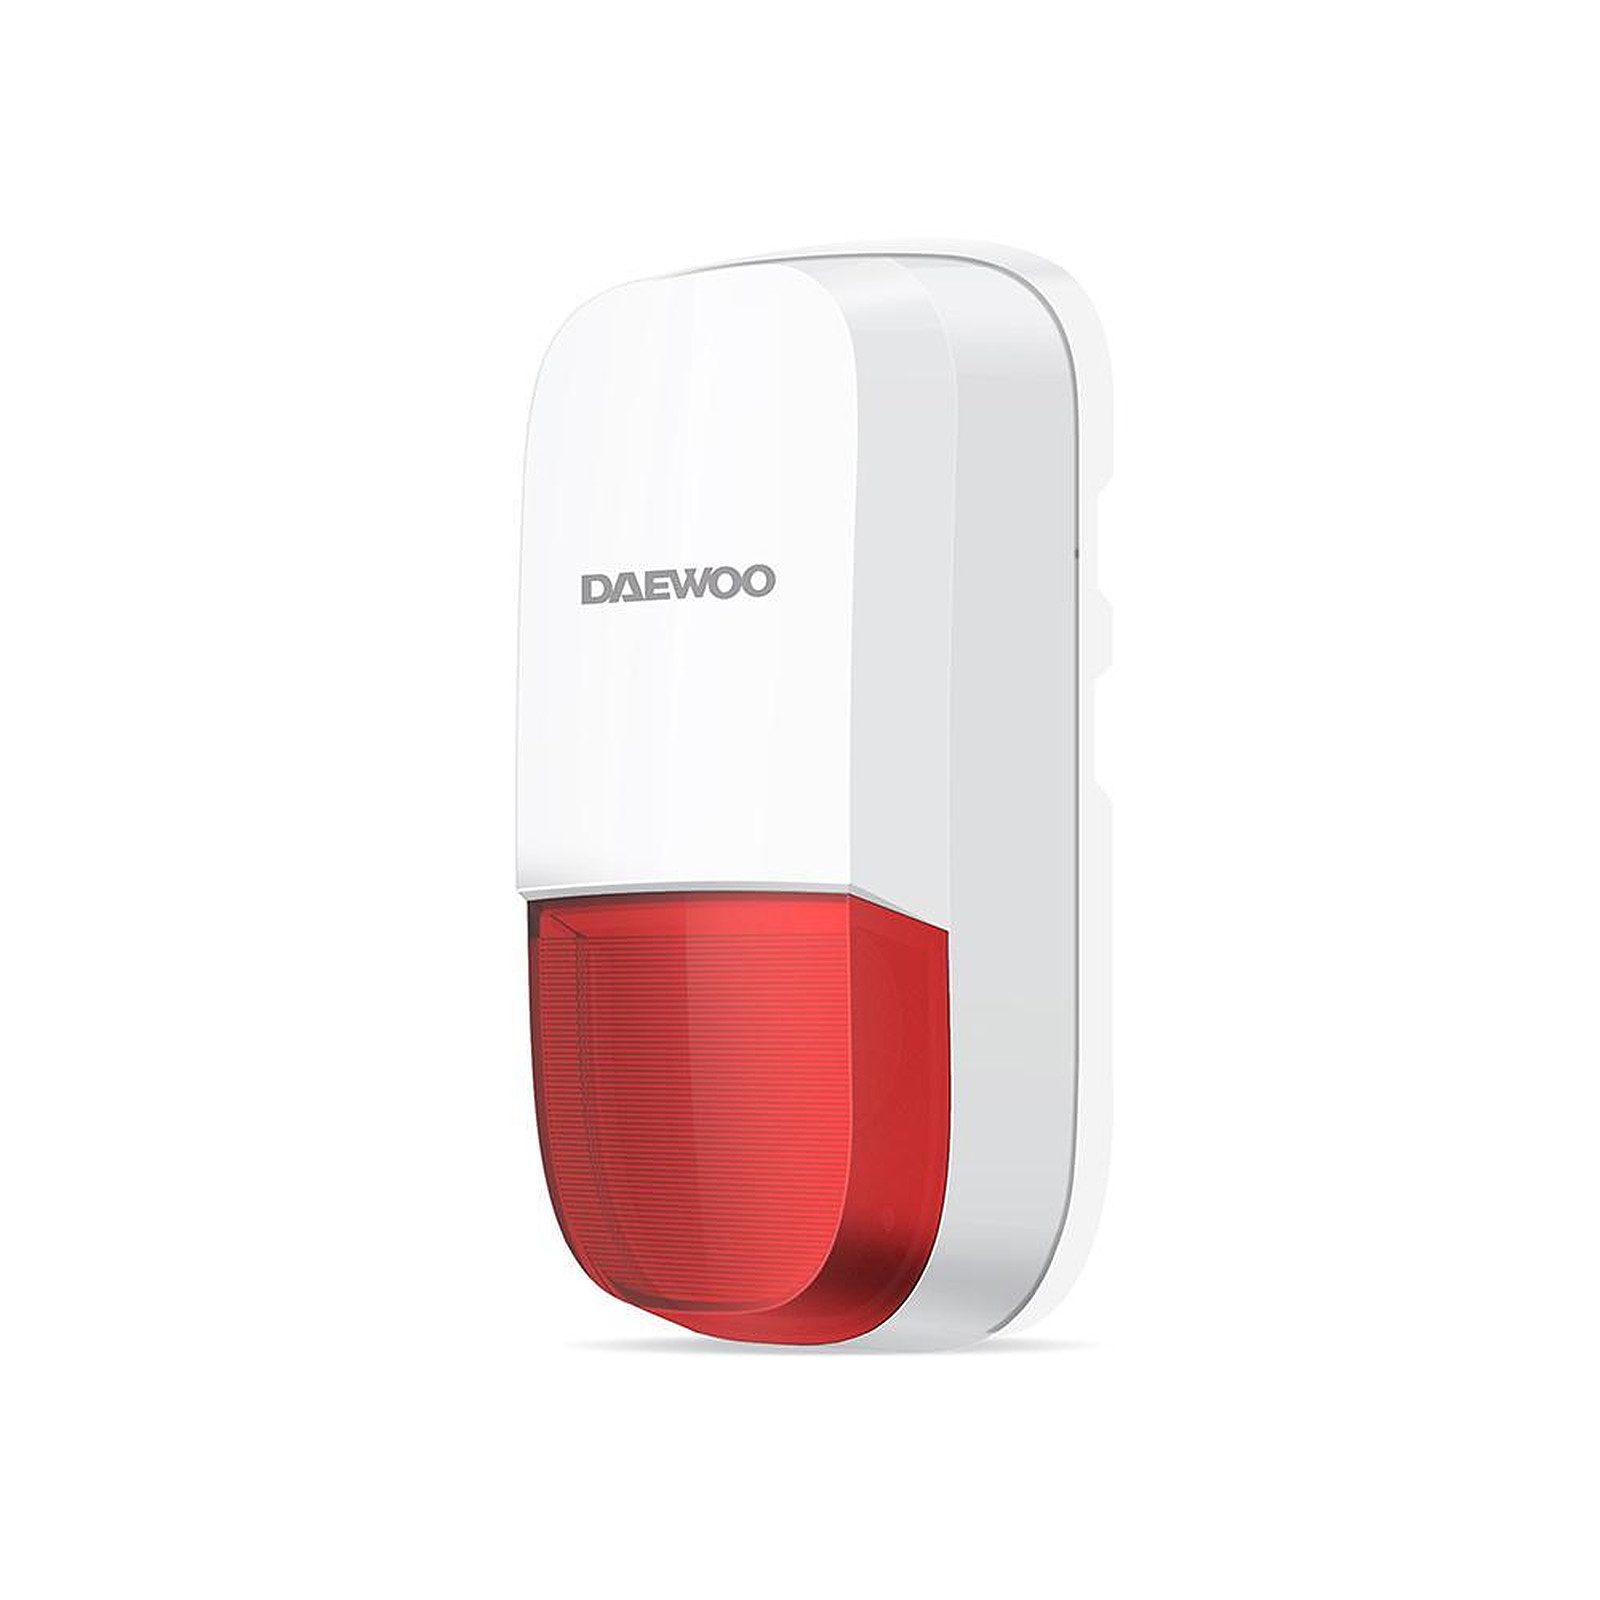 DAEWOO WOS501 - Kit alarme Daewoo